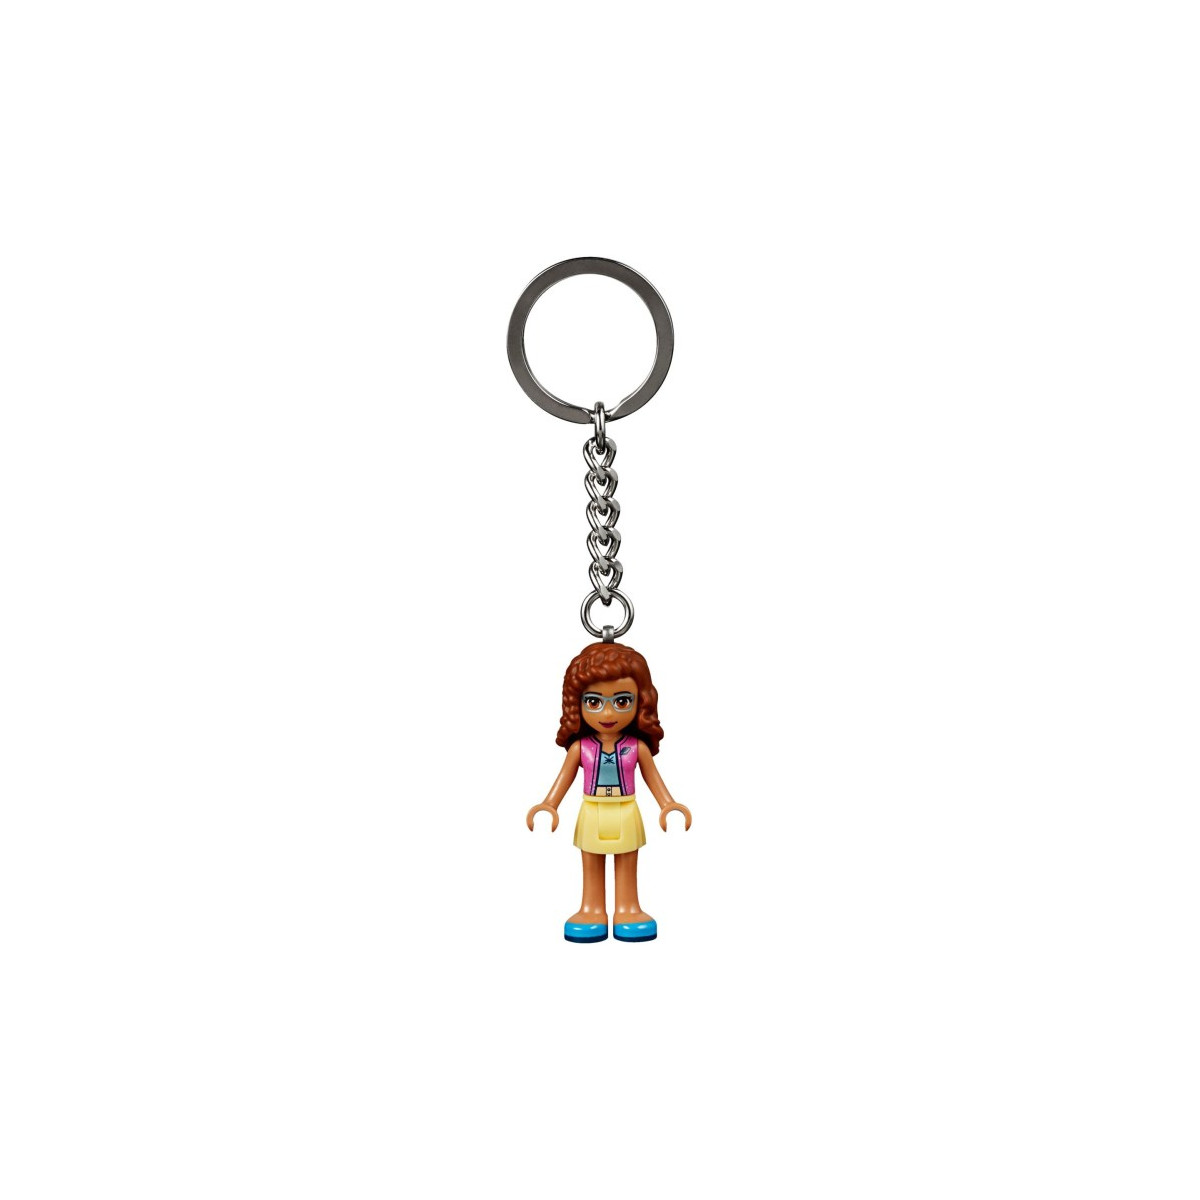 Lego 853883 - Friends Olivia keychain